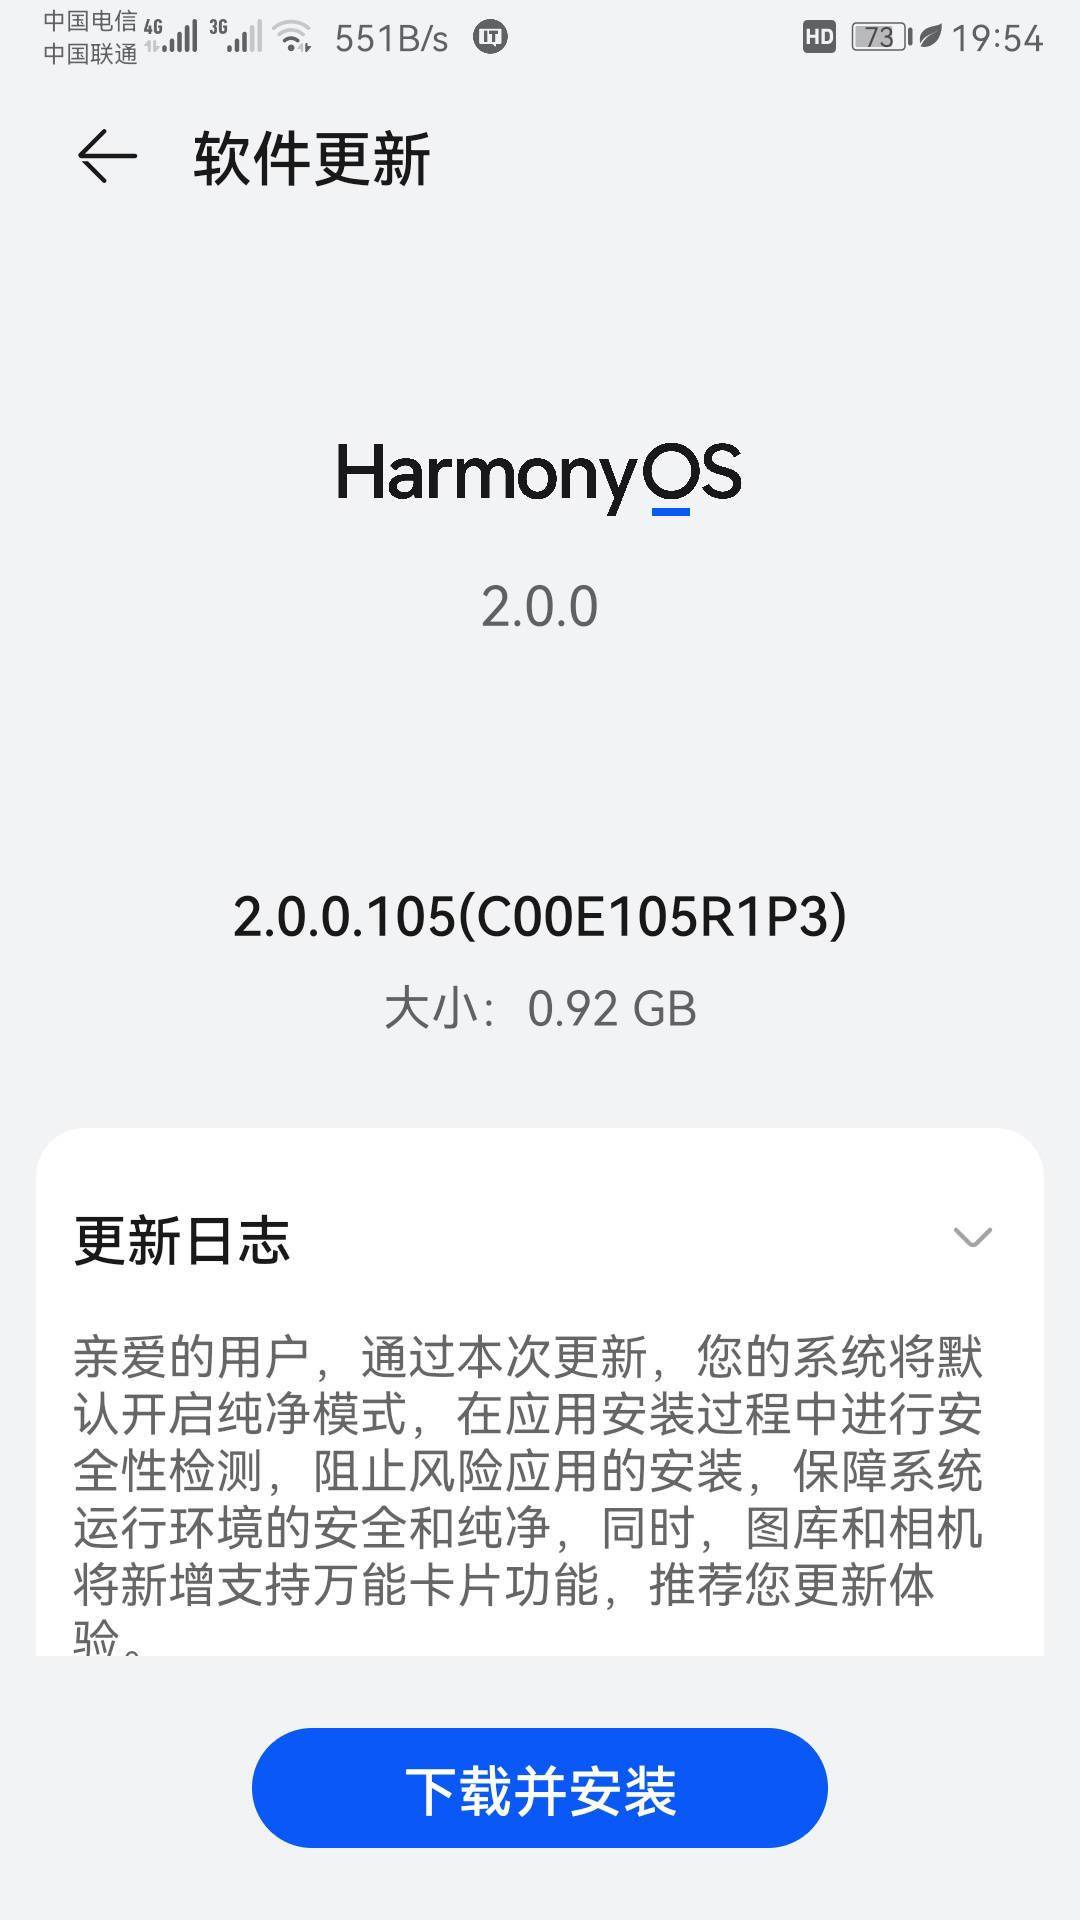 华为|华为 Mate 9 推送鸿蒙 HarmonyOS 2.0.0.105 版本更新